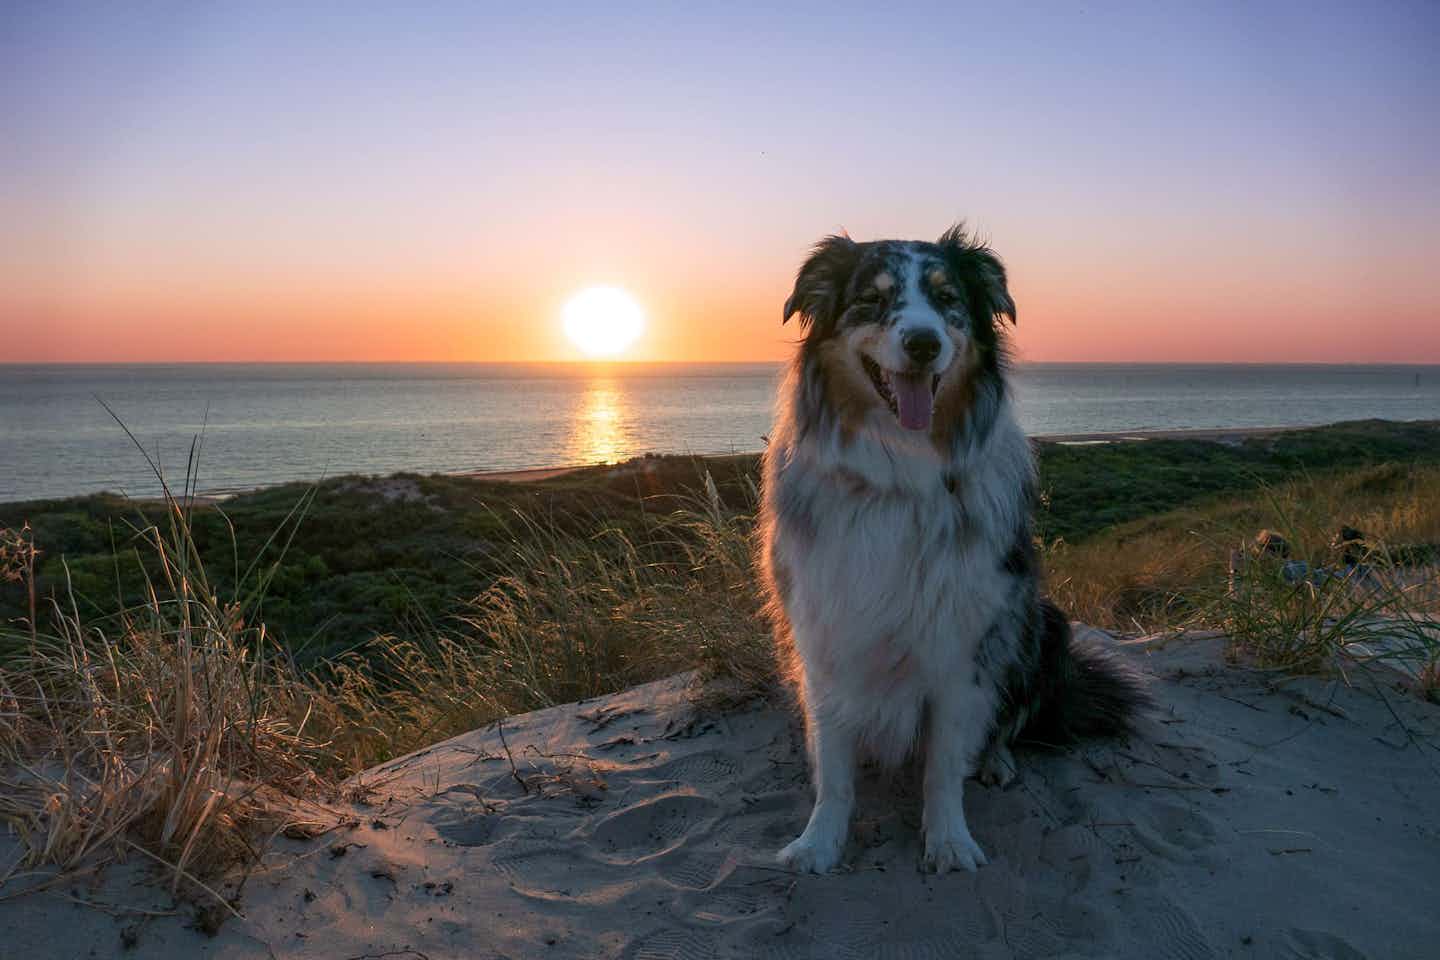 Campeggio con cane in riva al mare in Olanda